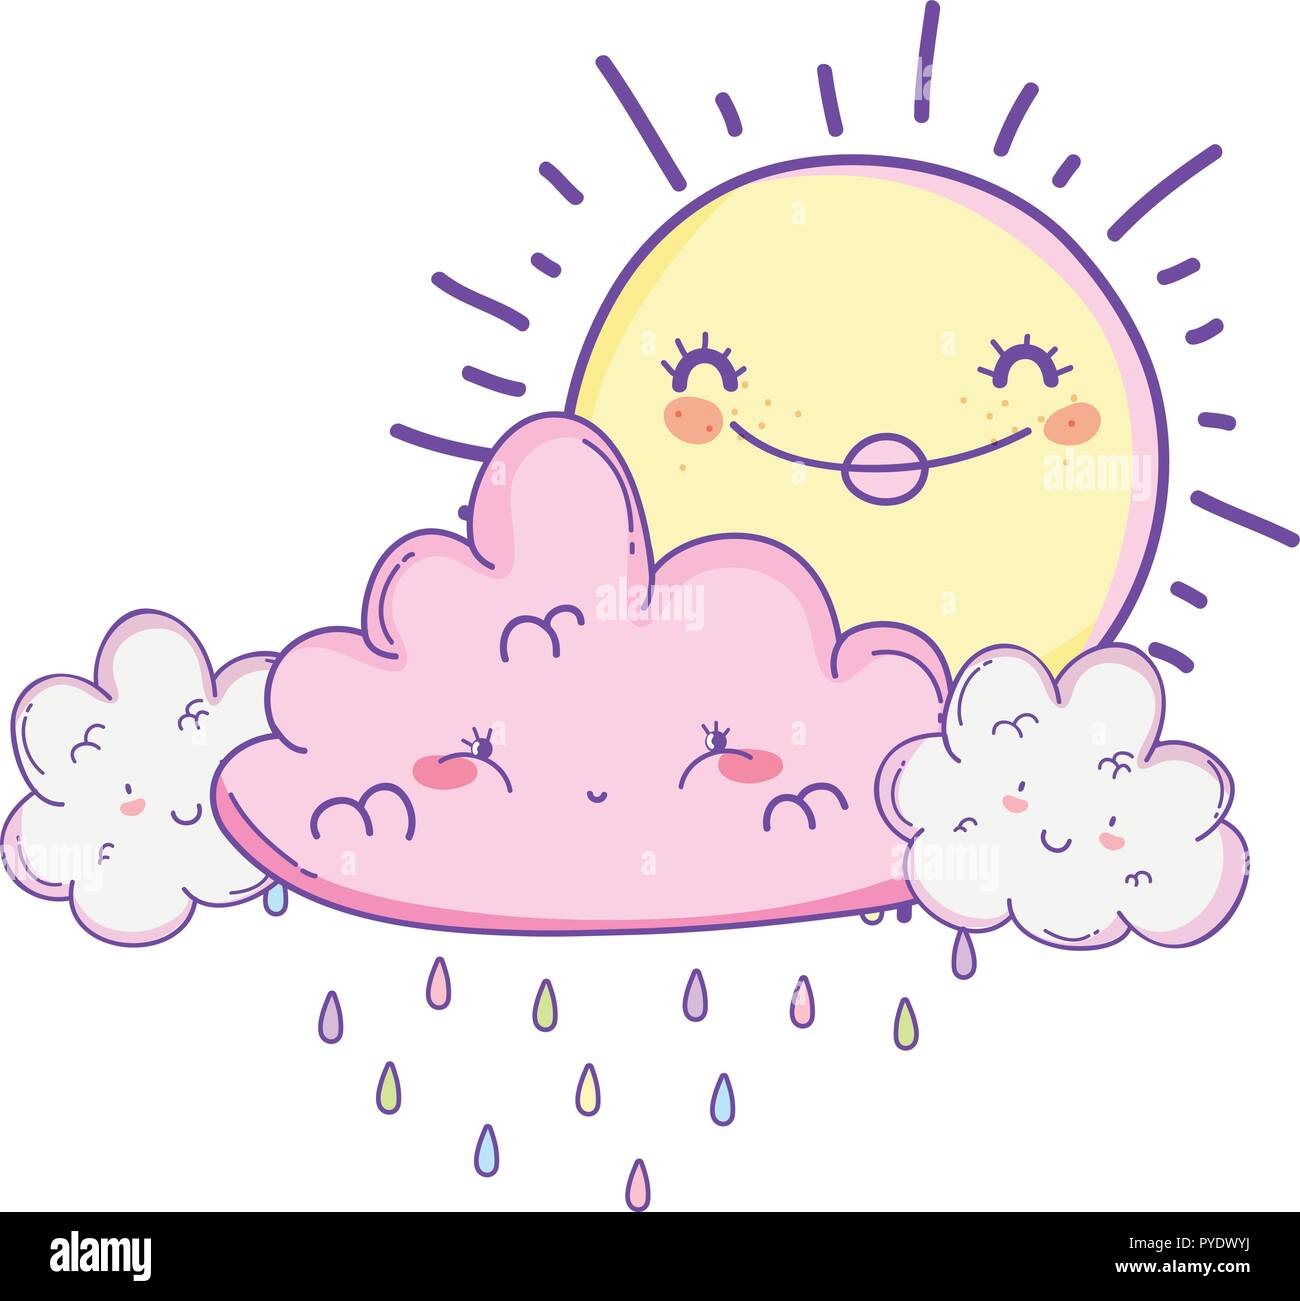 Sun and clouds cartoons Stock Vector